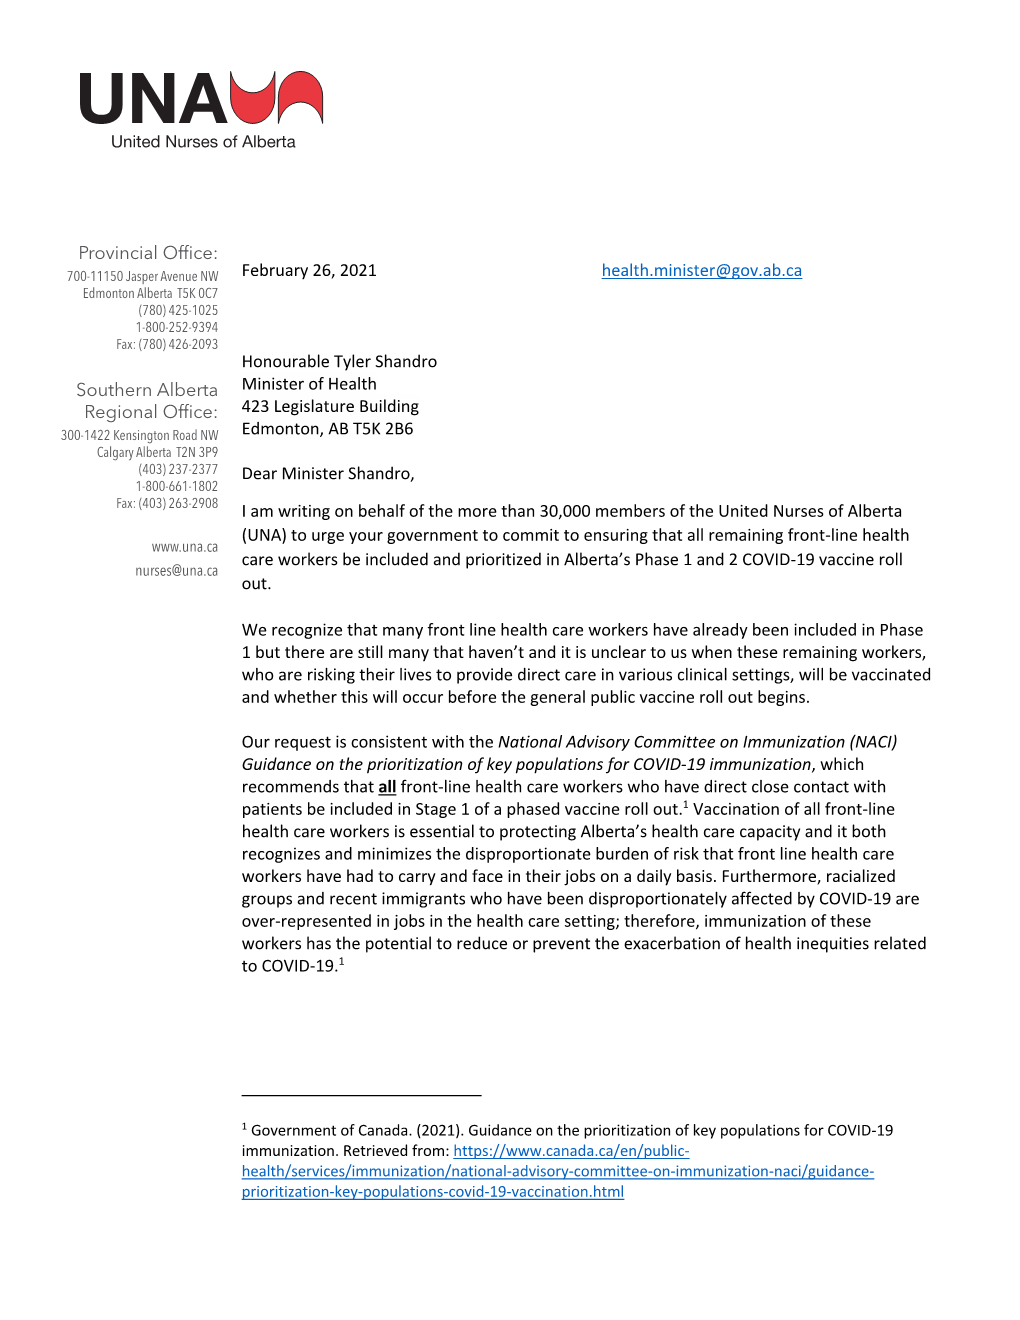 Letter to Minister Shandro Feb 26 2021